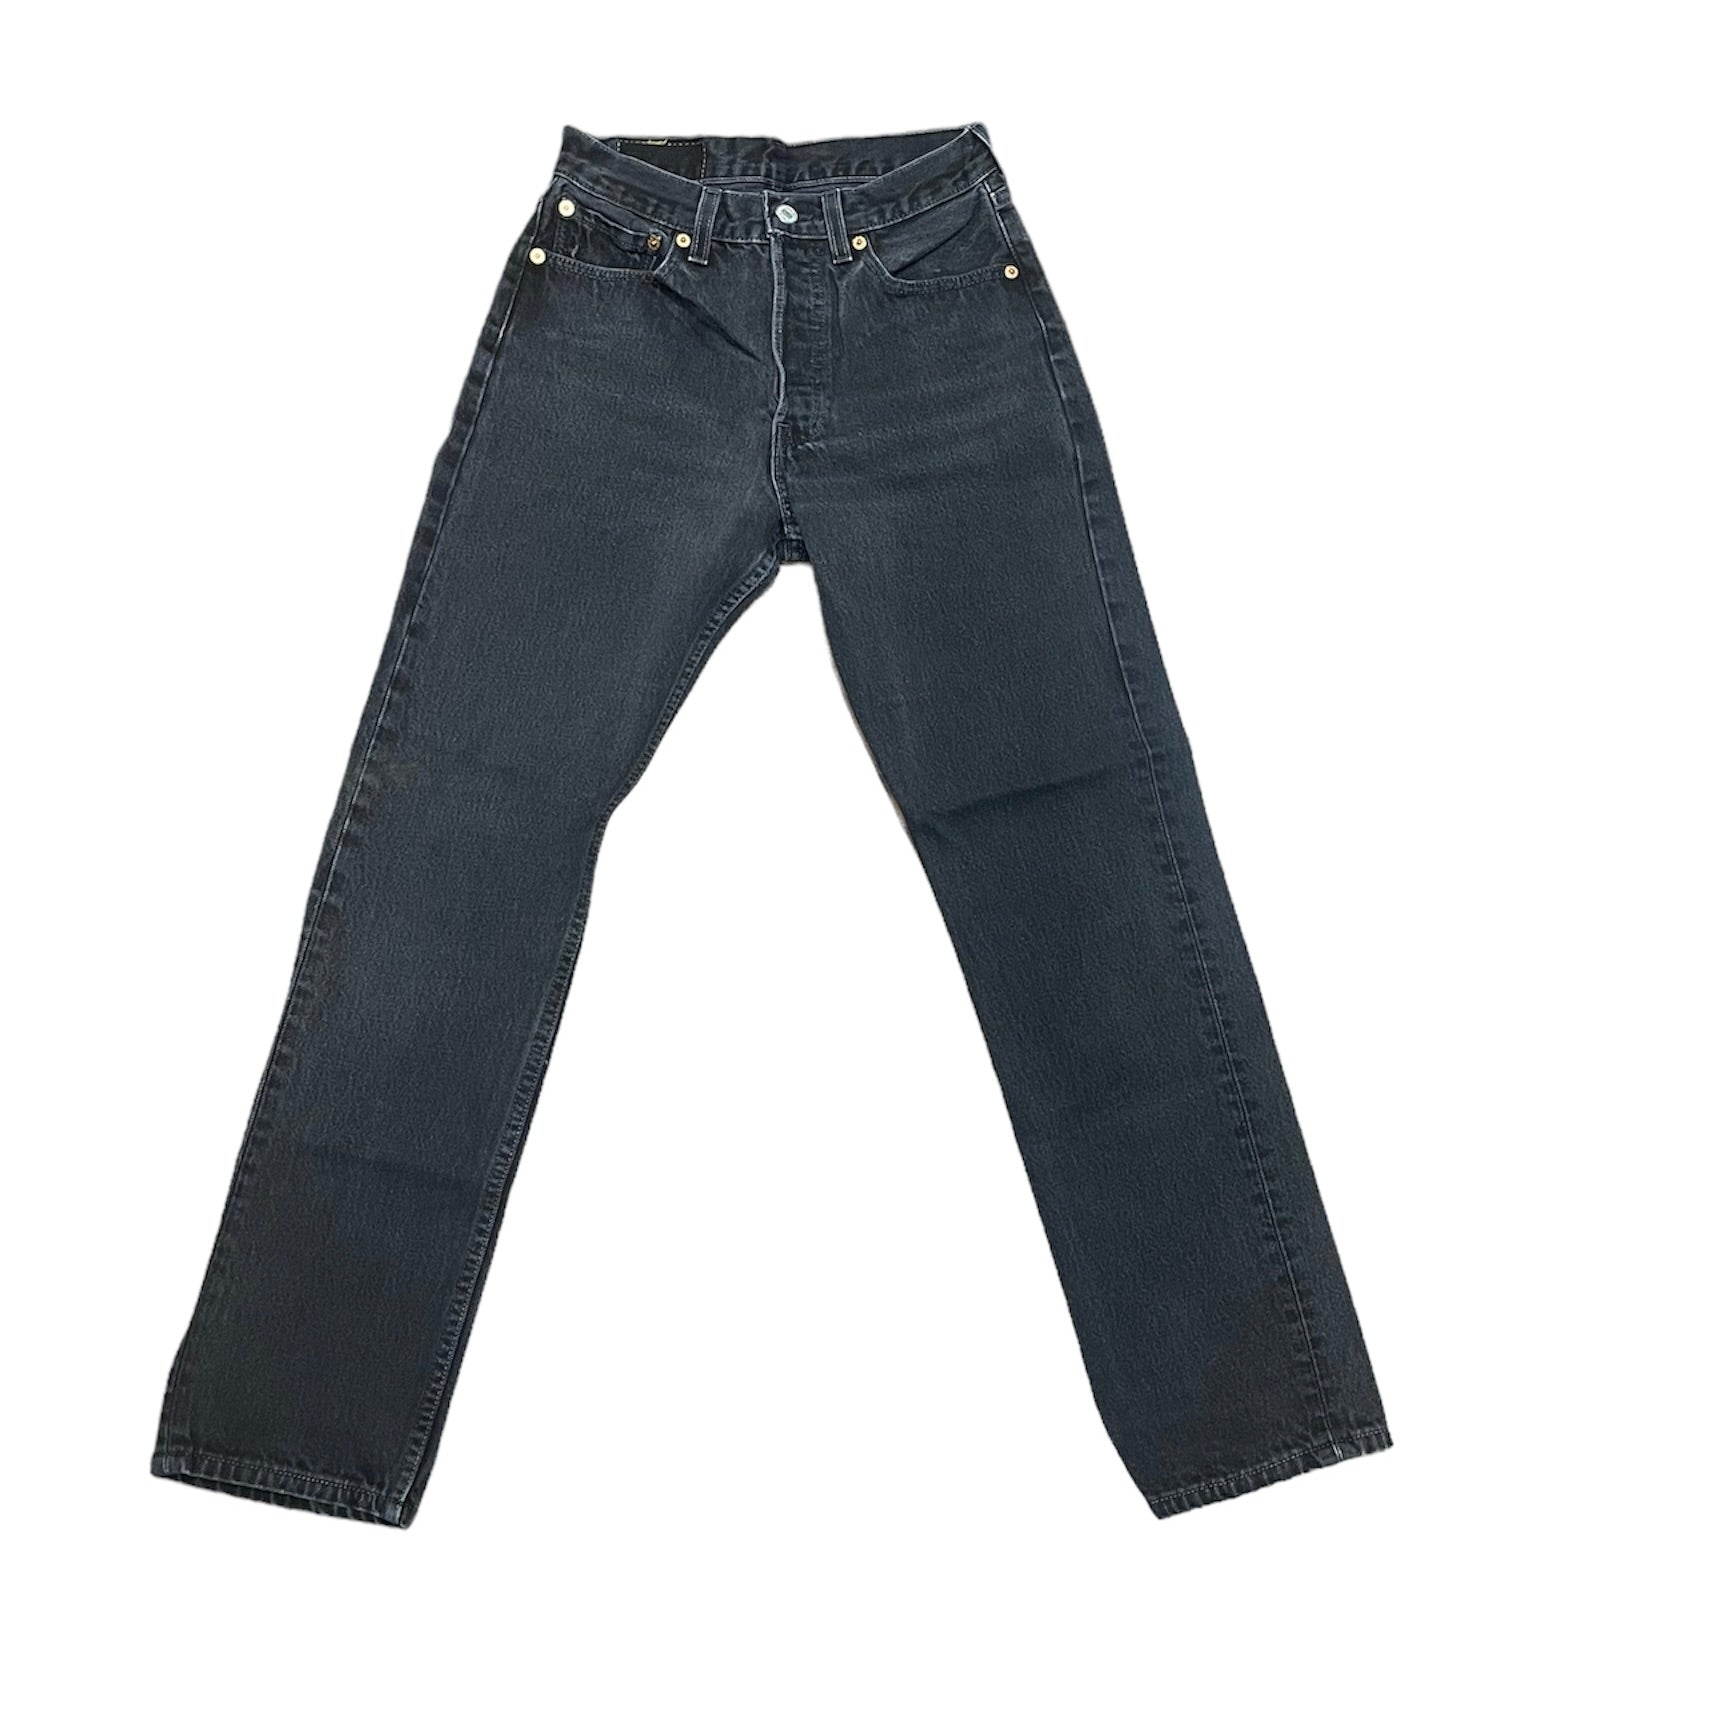 Vintage Levis 501 Washed Out Black Jeans